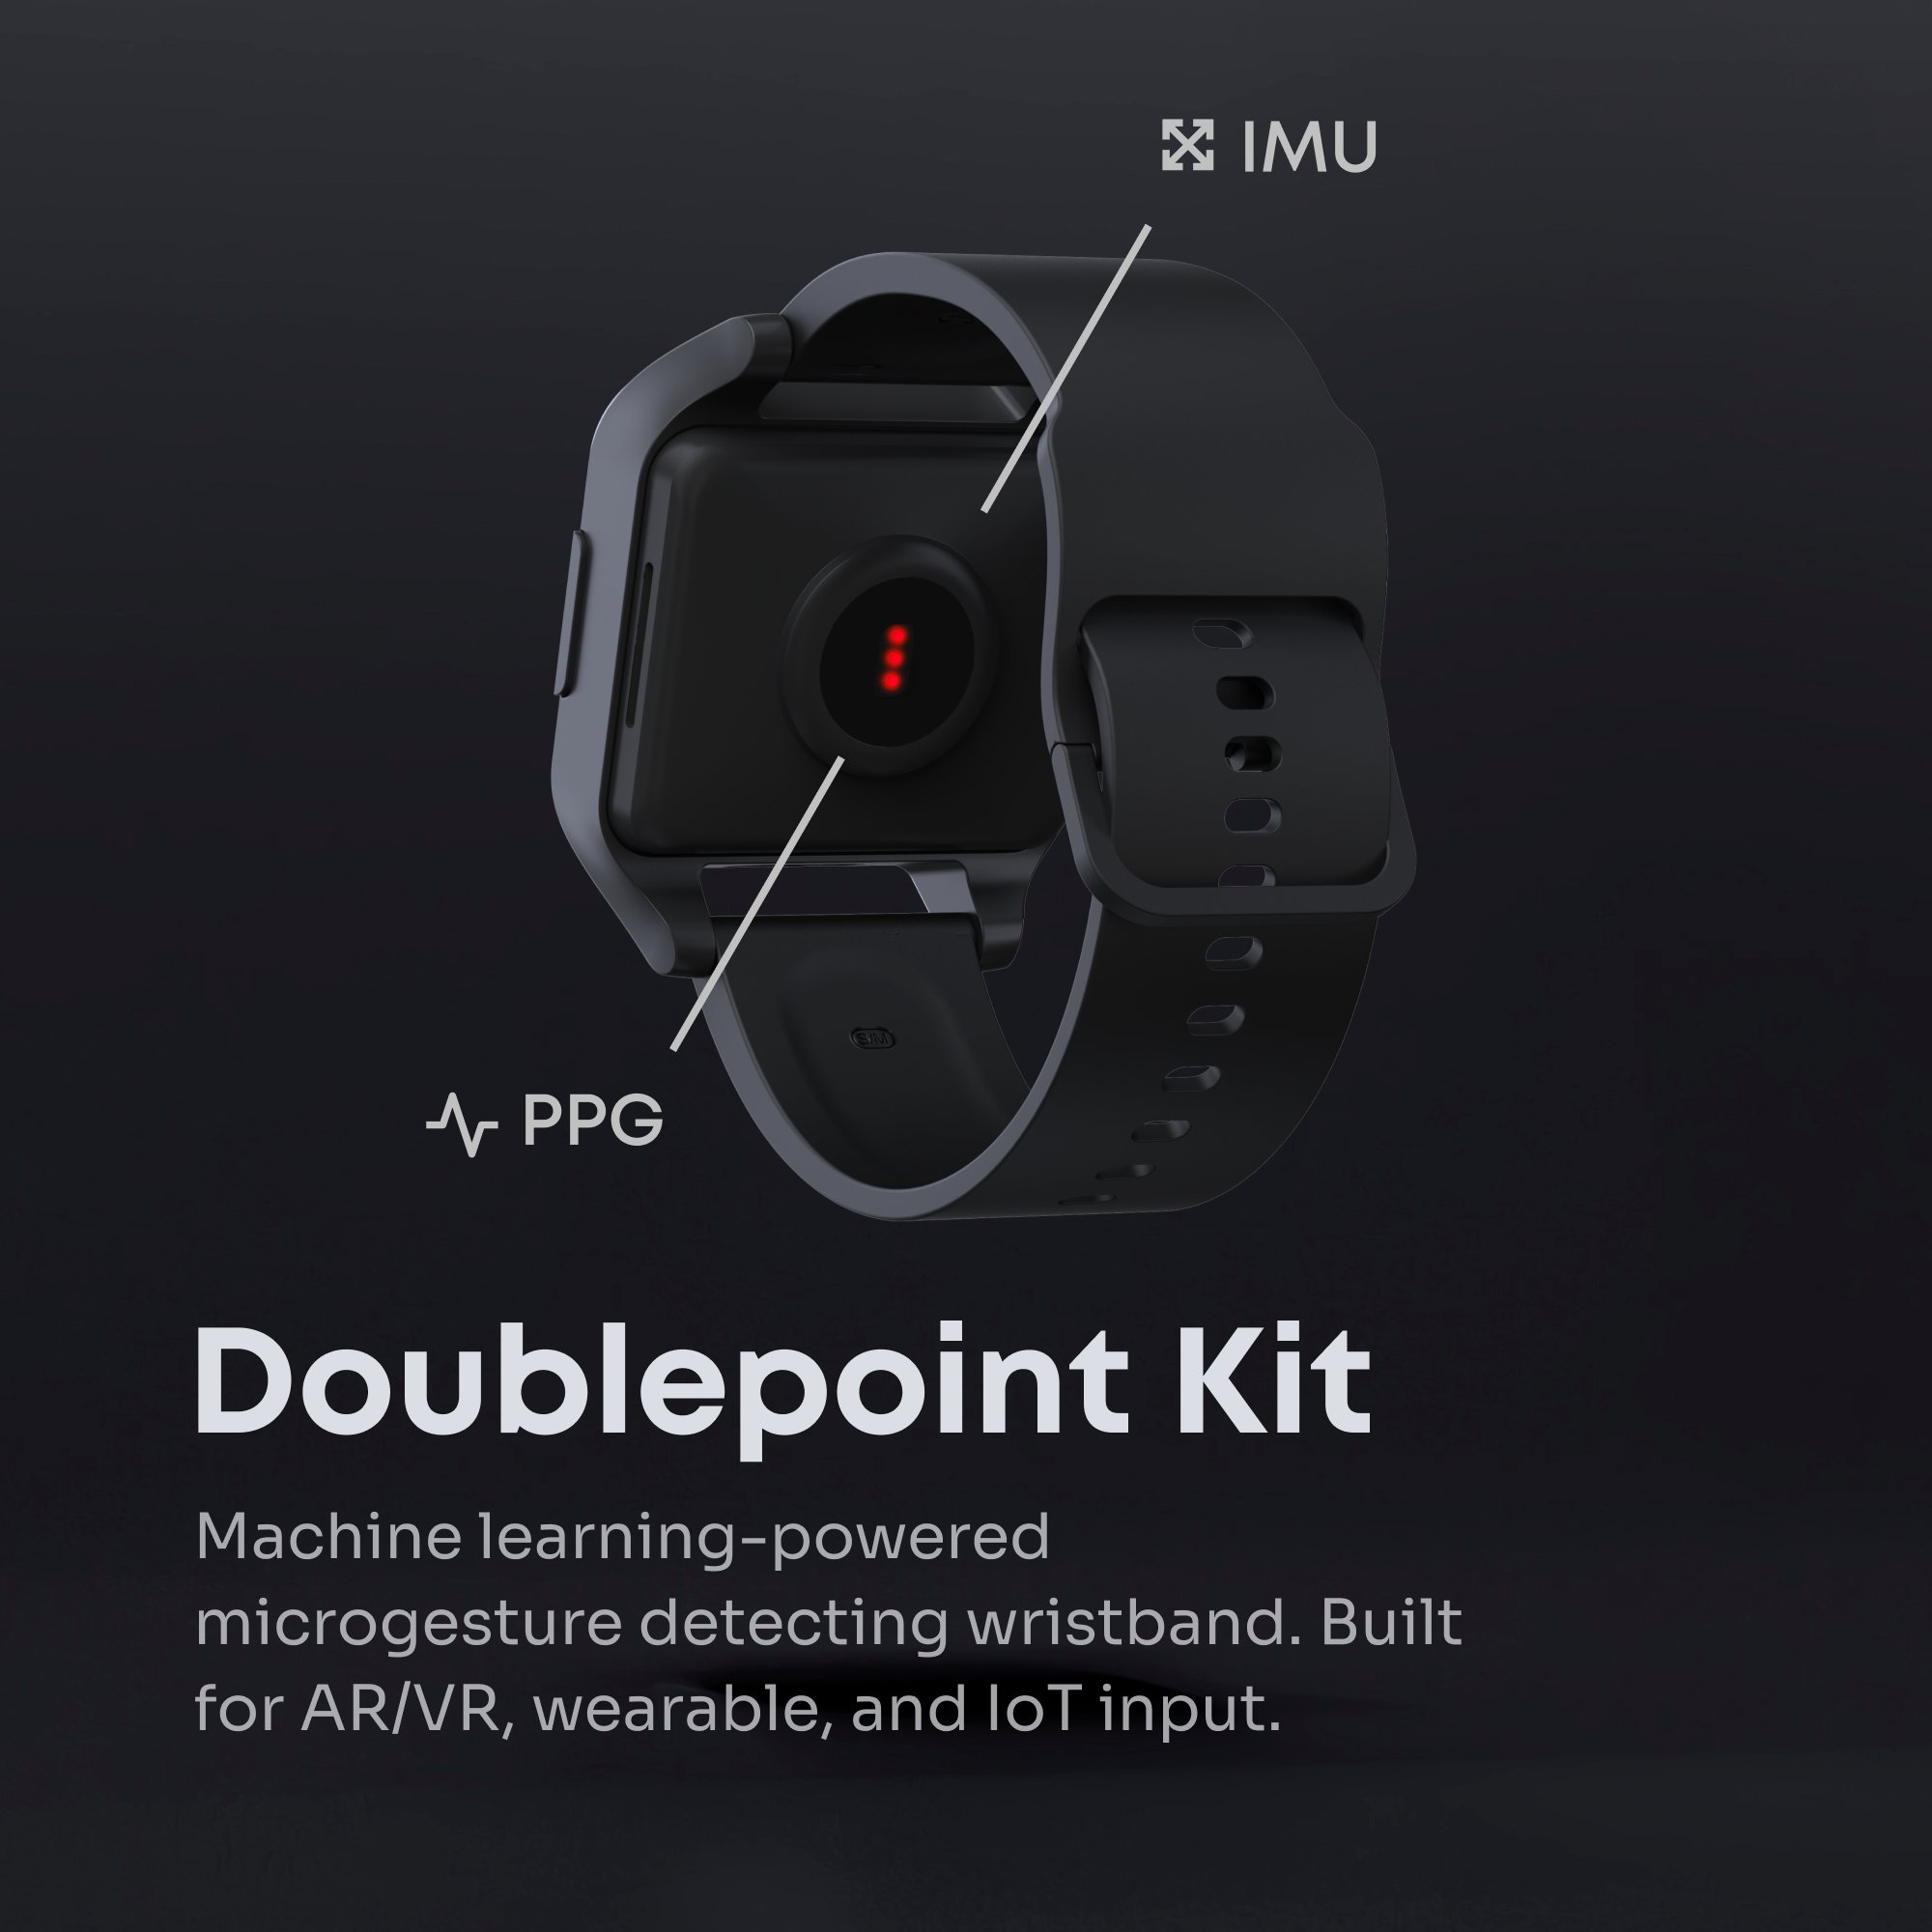 Doublepoint Kit tuo kehitetyn teknologian kehittäjien testattavaksi osana referenssilaitetta.